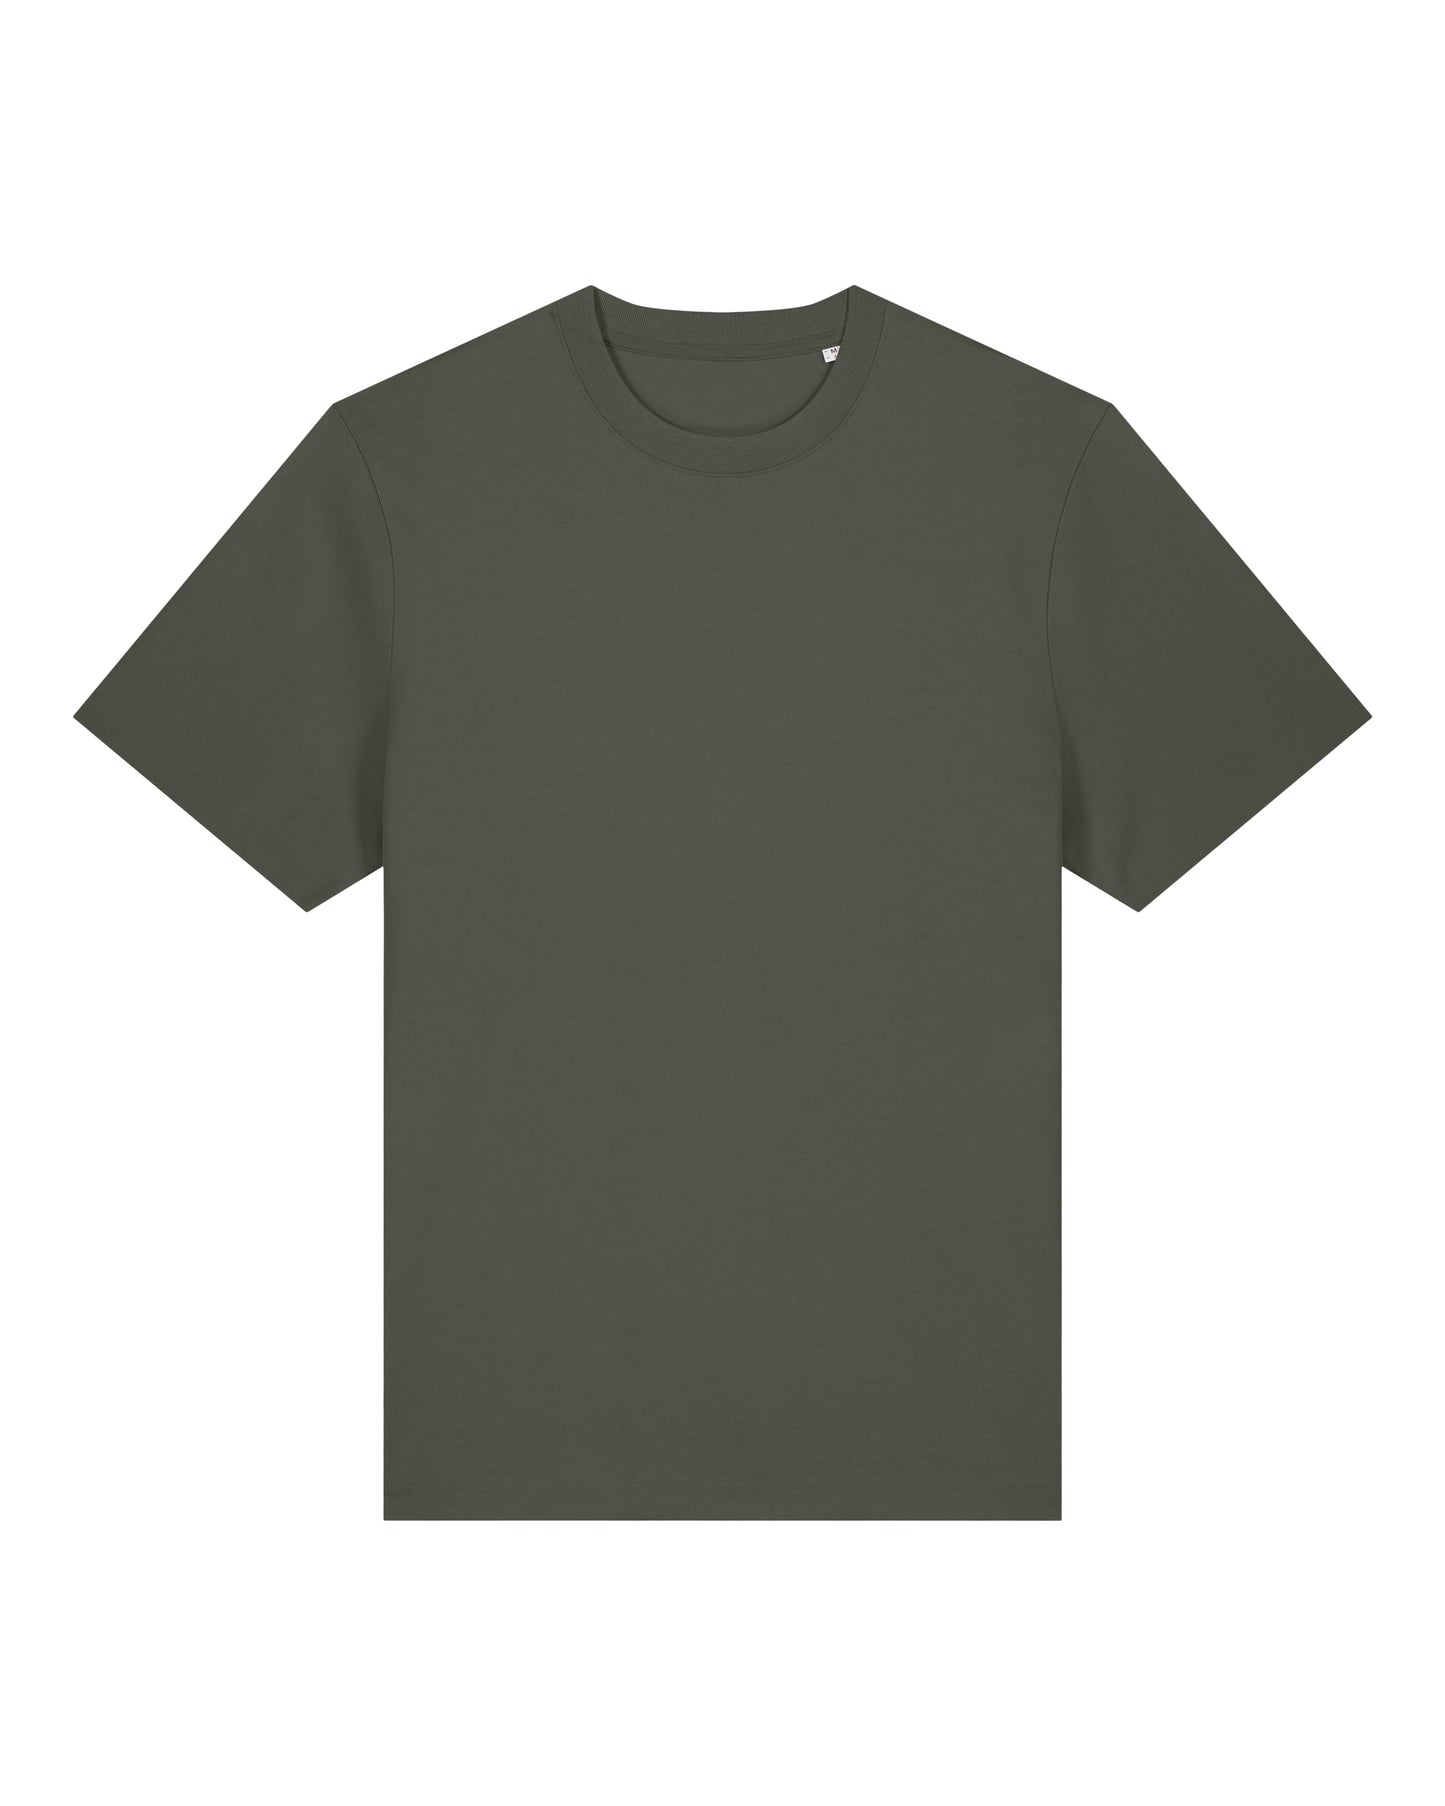 It Fits Swish - T-shirt unisexe coupe décontractée - Épais - Kaki